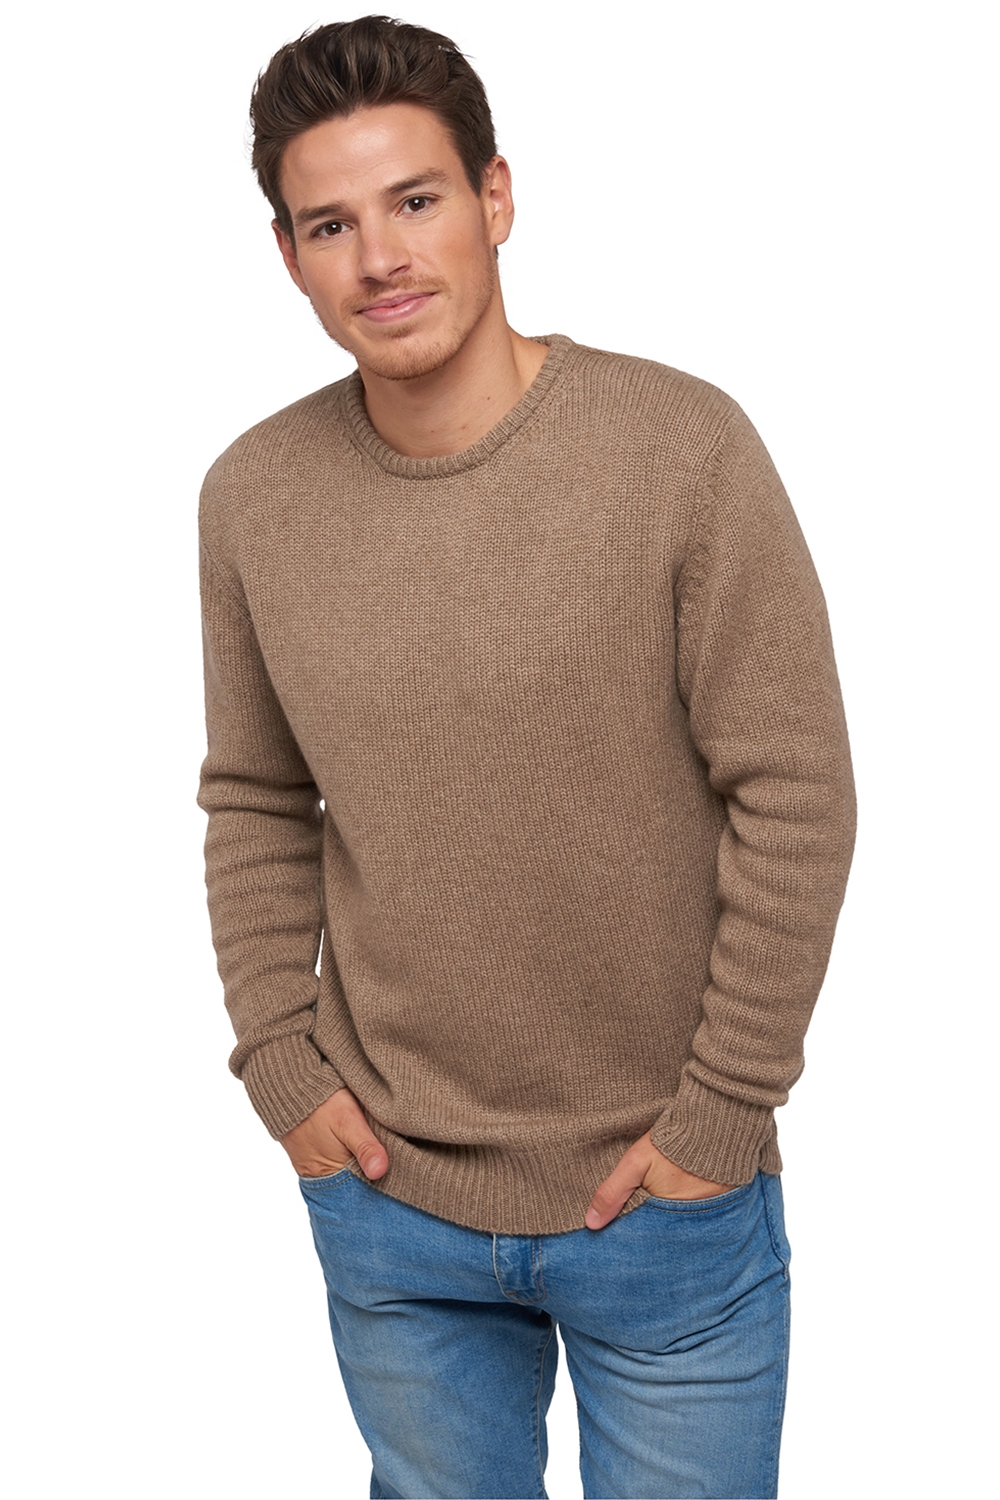  men chunky sweater natural bibi natural brown m